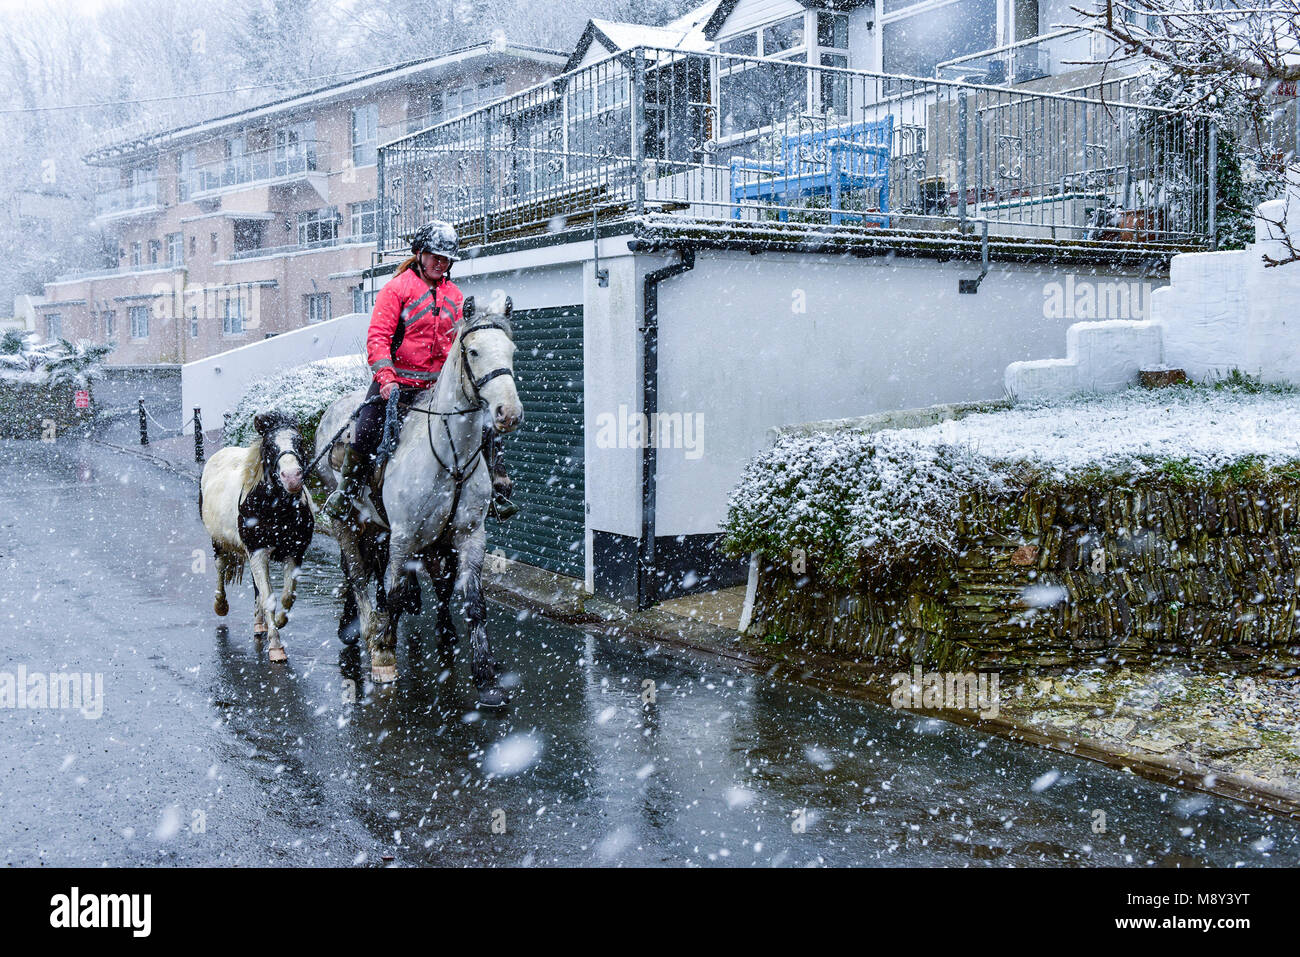 Un cheval-cavalier équitation son cheval à travers les fortes chutes de neige à Newquay Cornwall. Banque D'Images